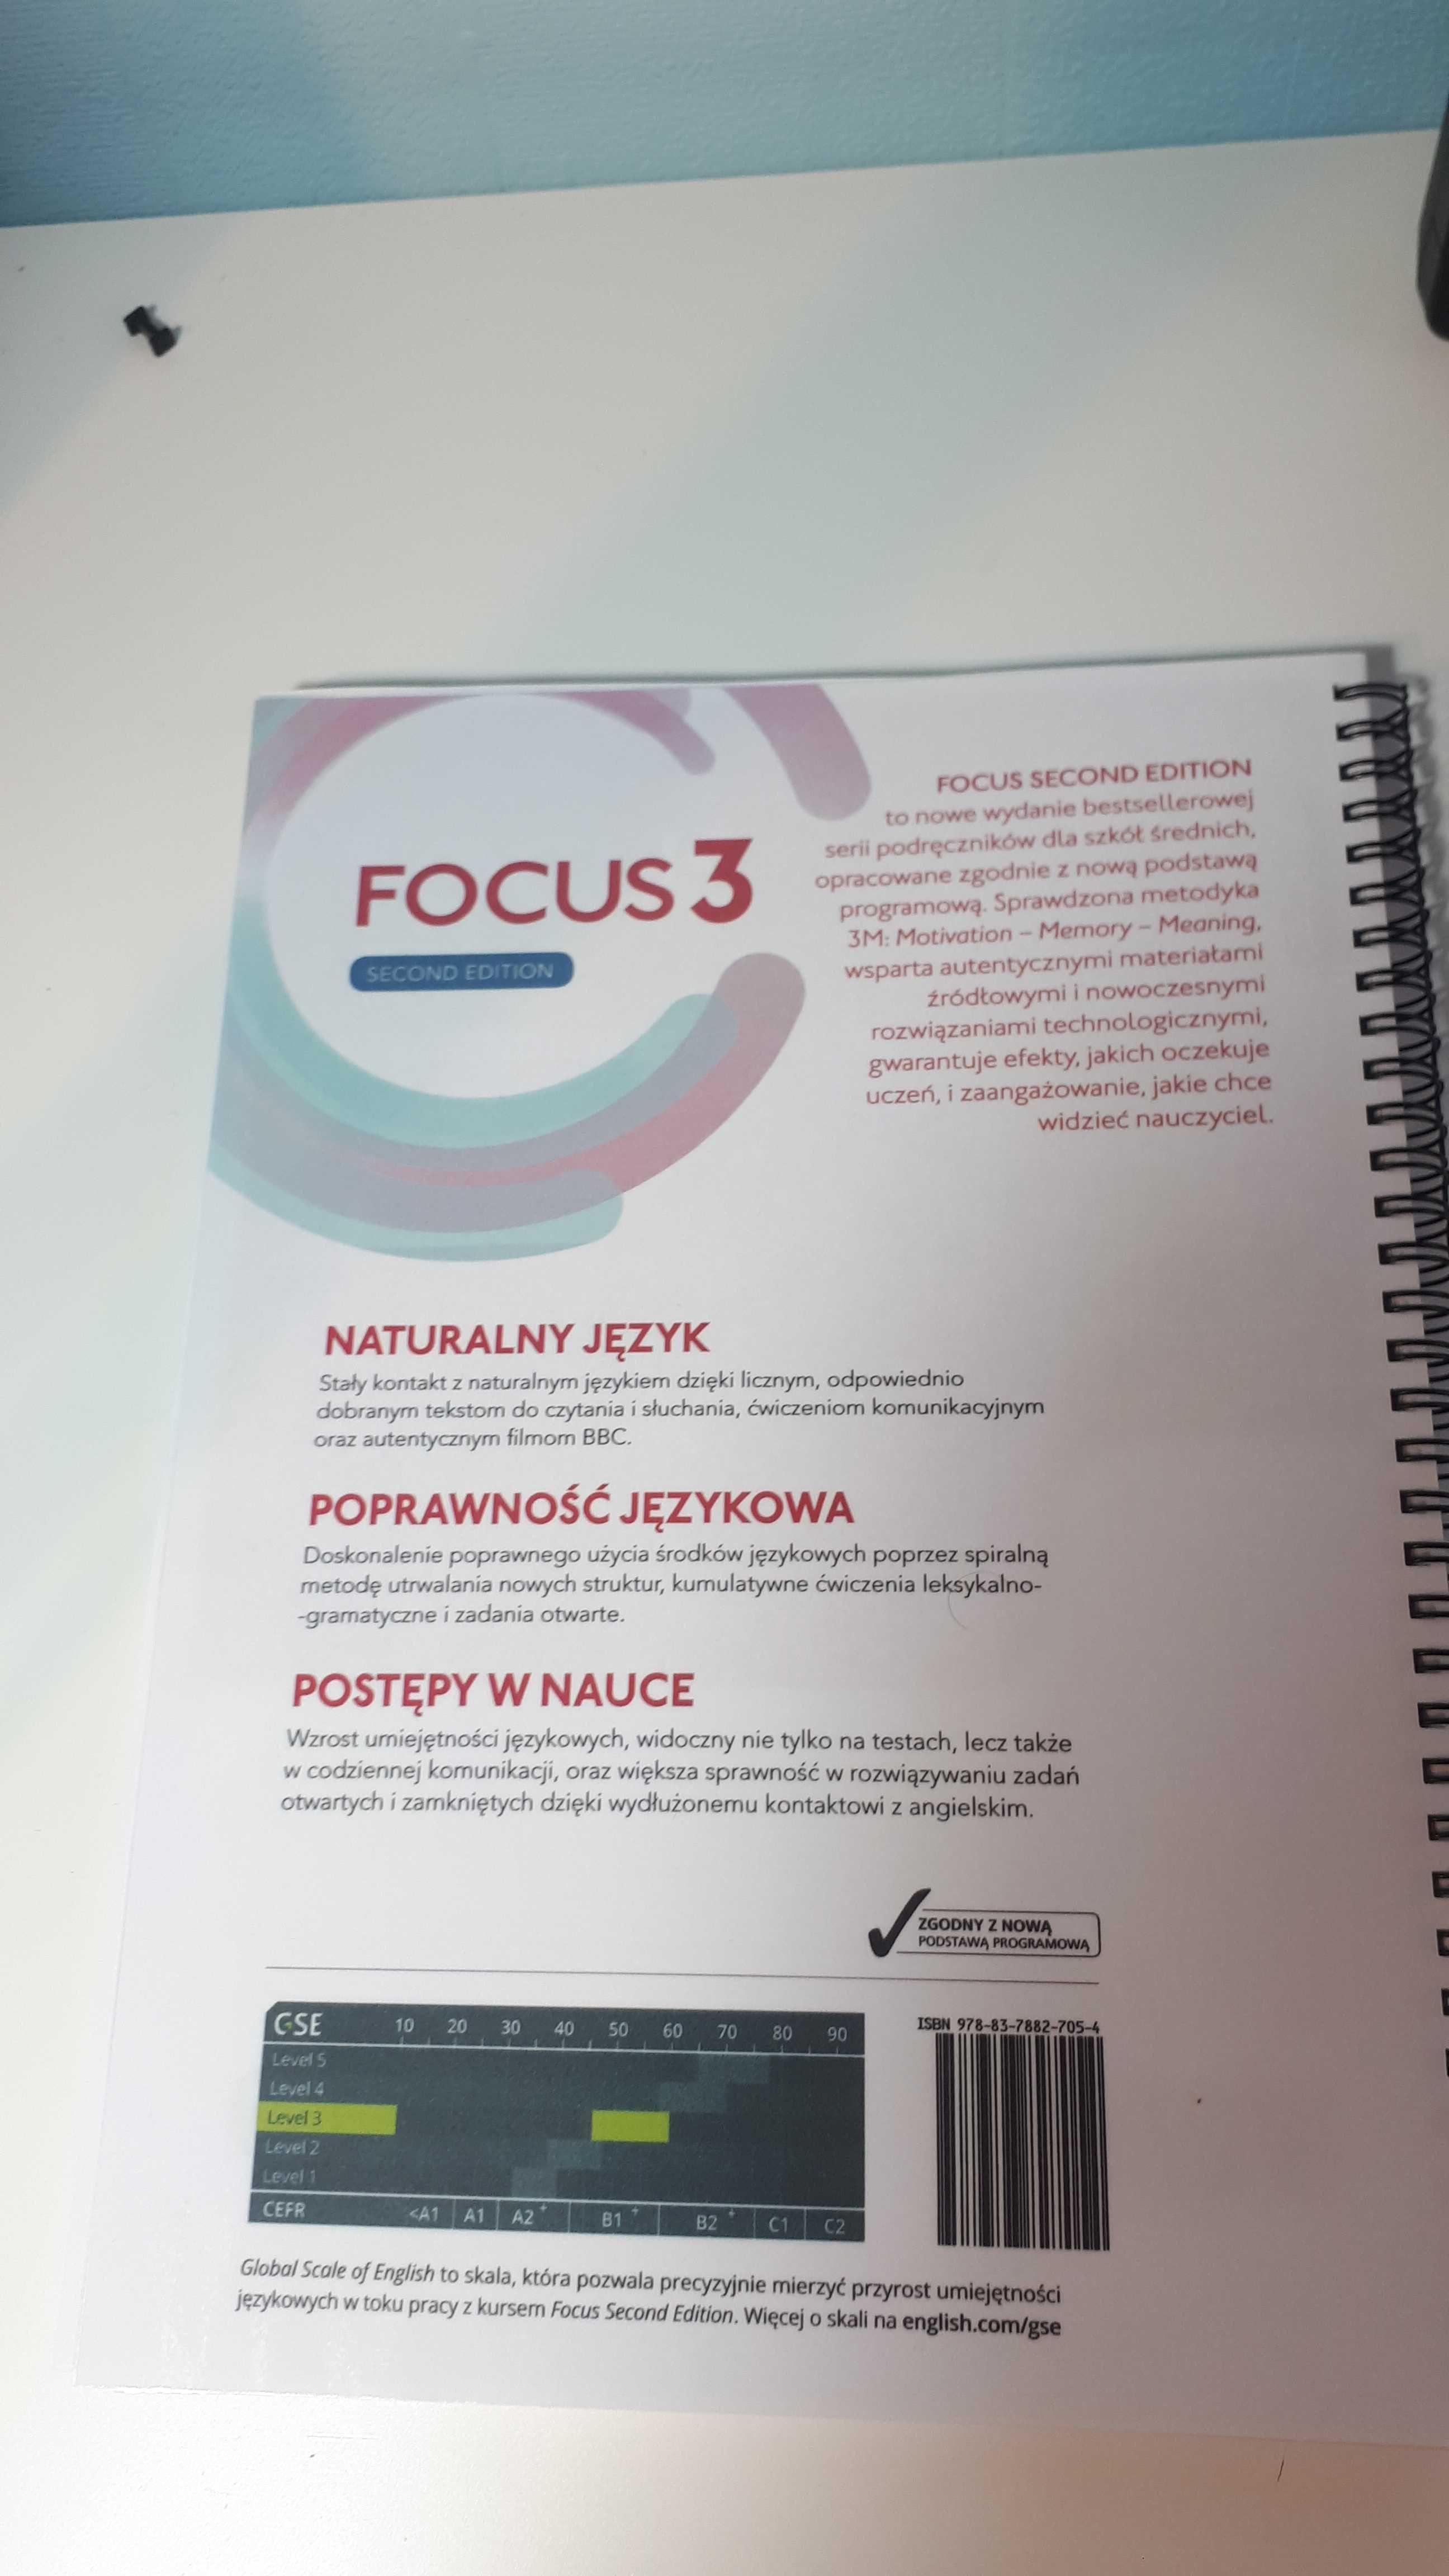 Sprzedam Focus 3 książka i zeszyt do ćwiczeń(((